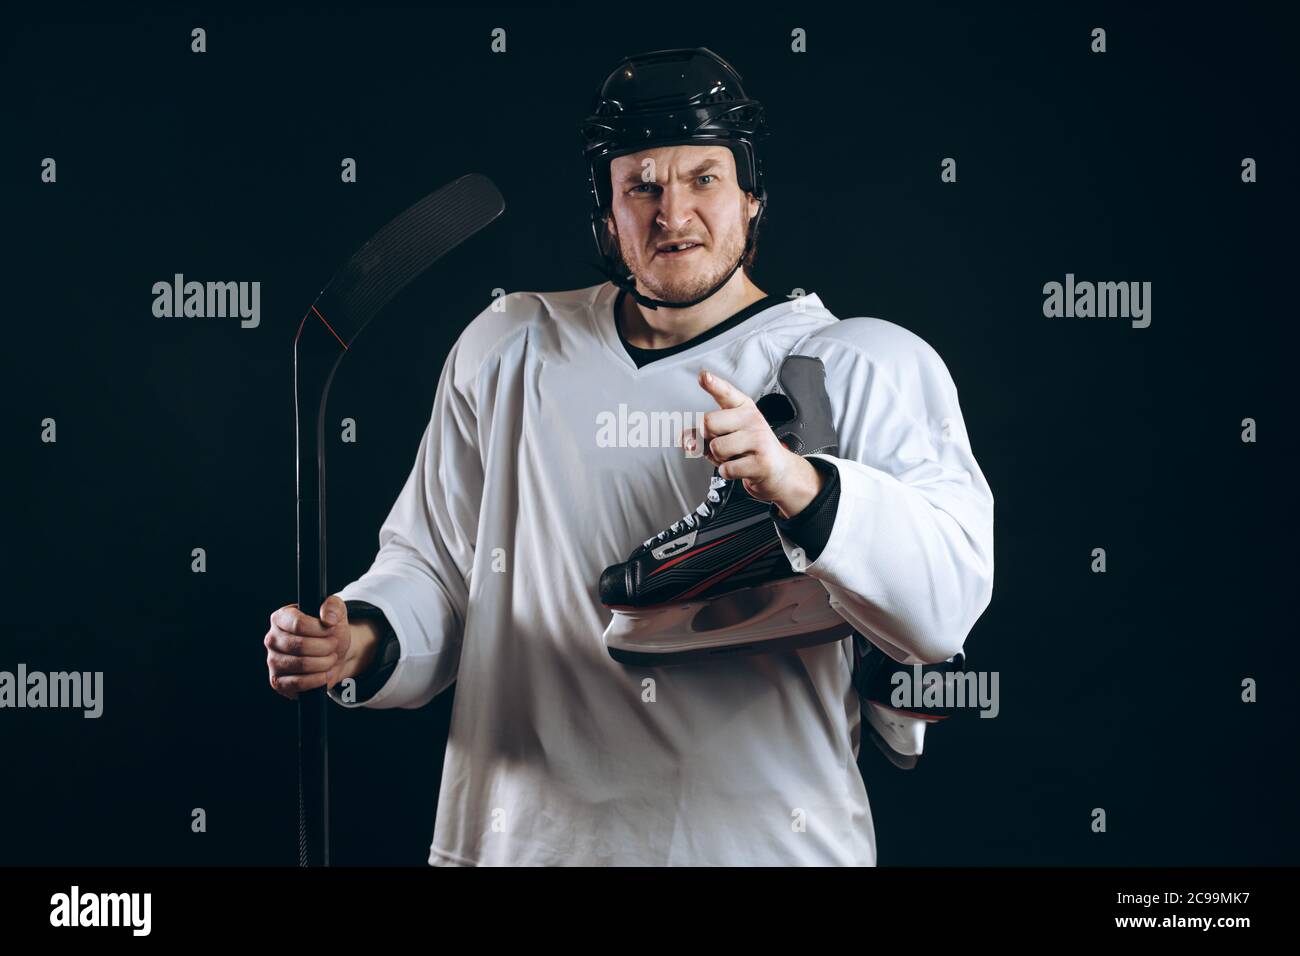 Porträt eines Professional Hockey Player in einer schützenden Sportswear und Helm mit Hockey Stick posiert und ein Skate in den Händen auf einem schwarzen Hintergrund. Stockfoto